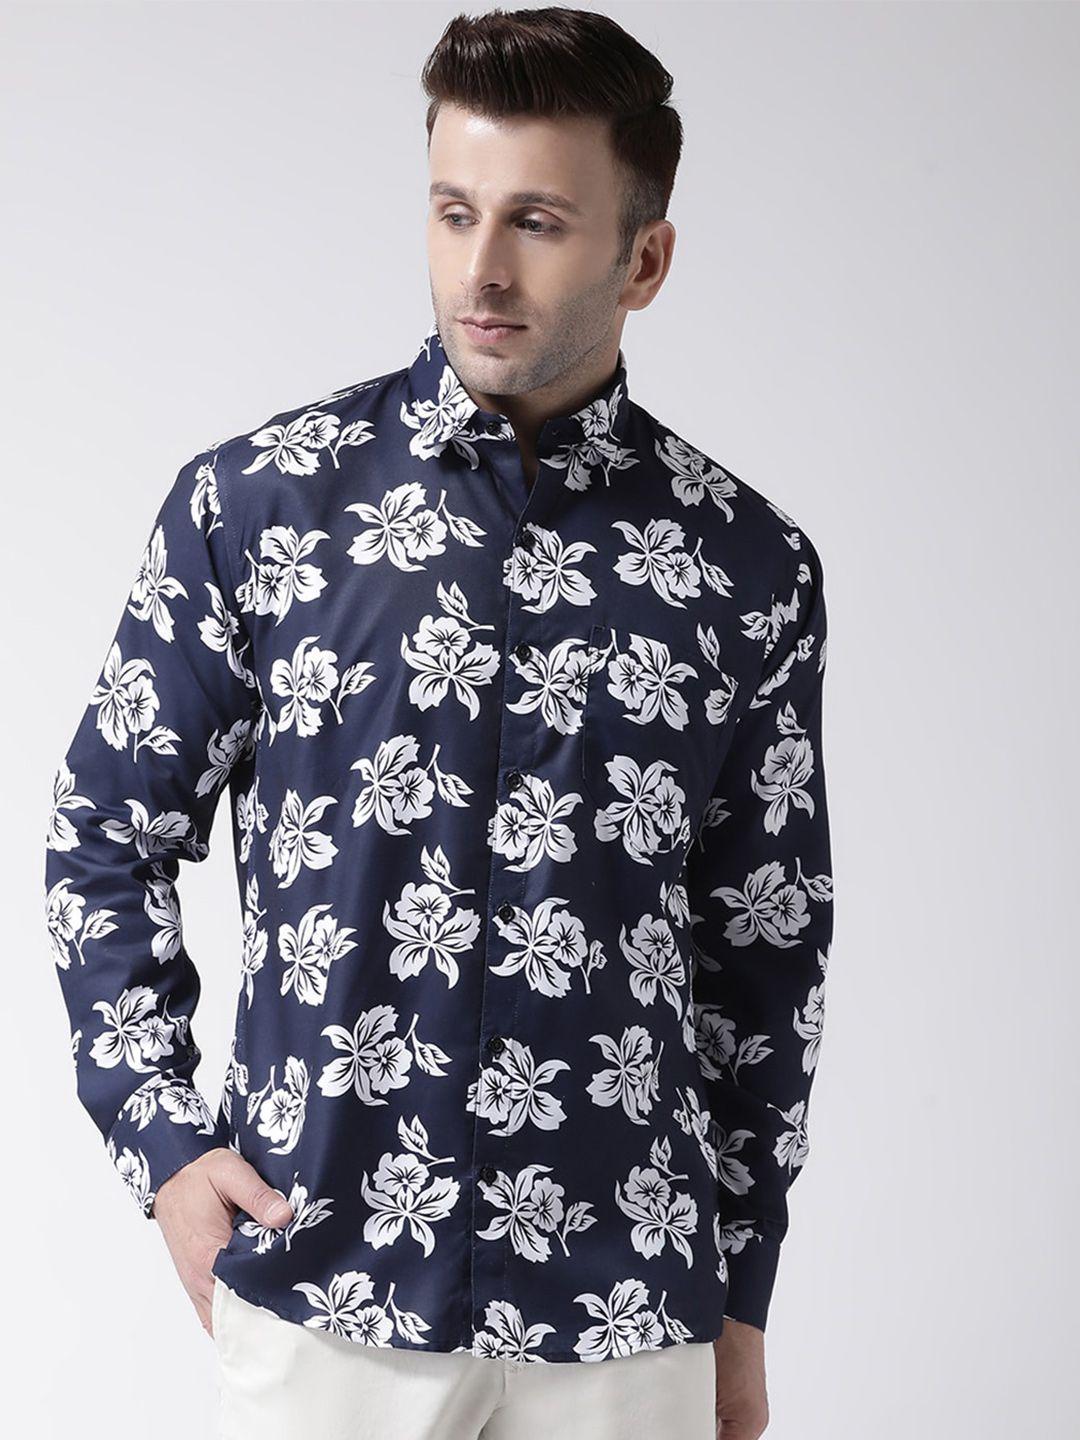 hangup men slim fit floral printed casual shirt